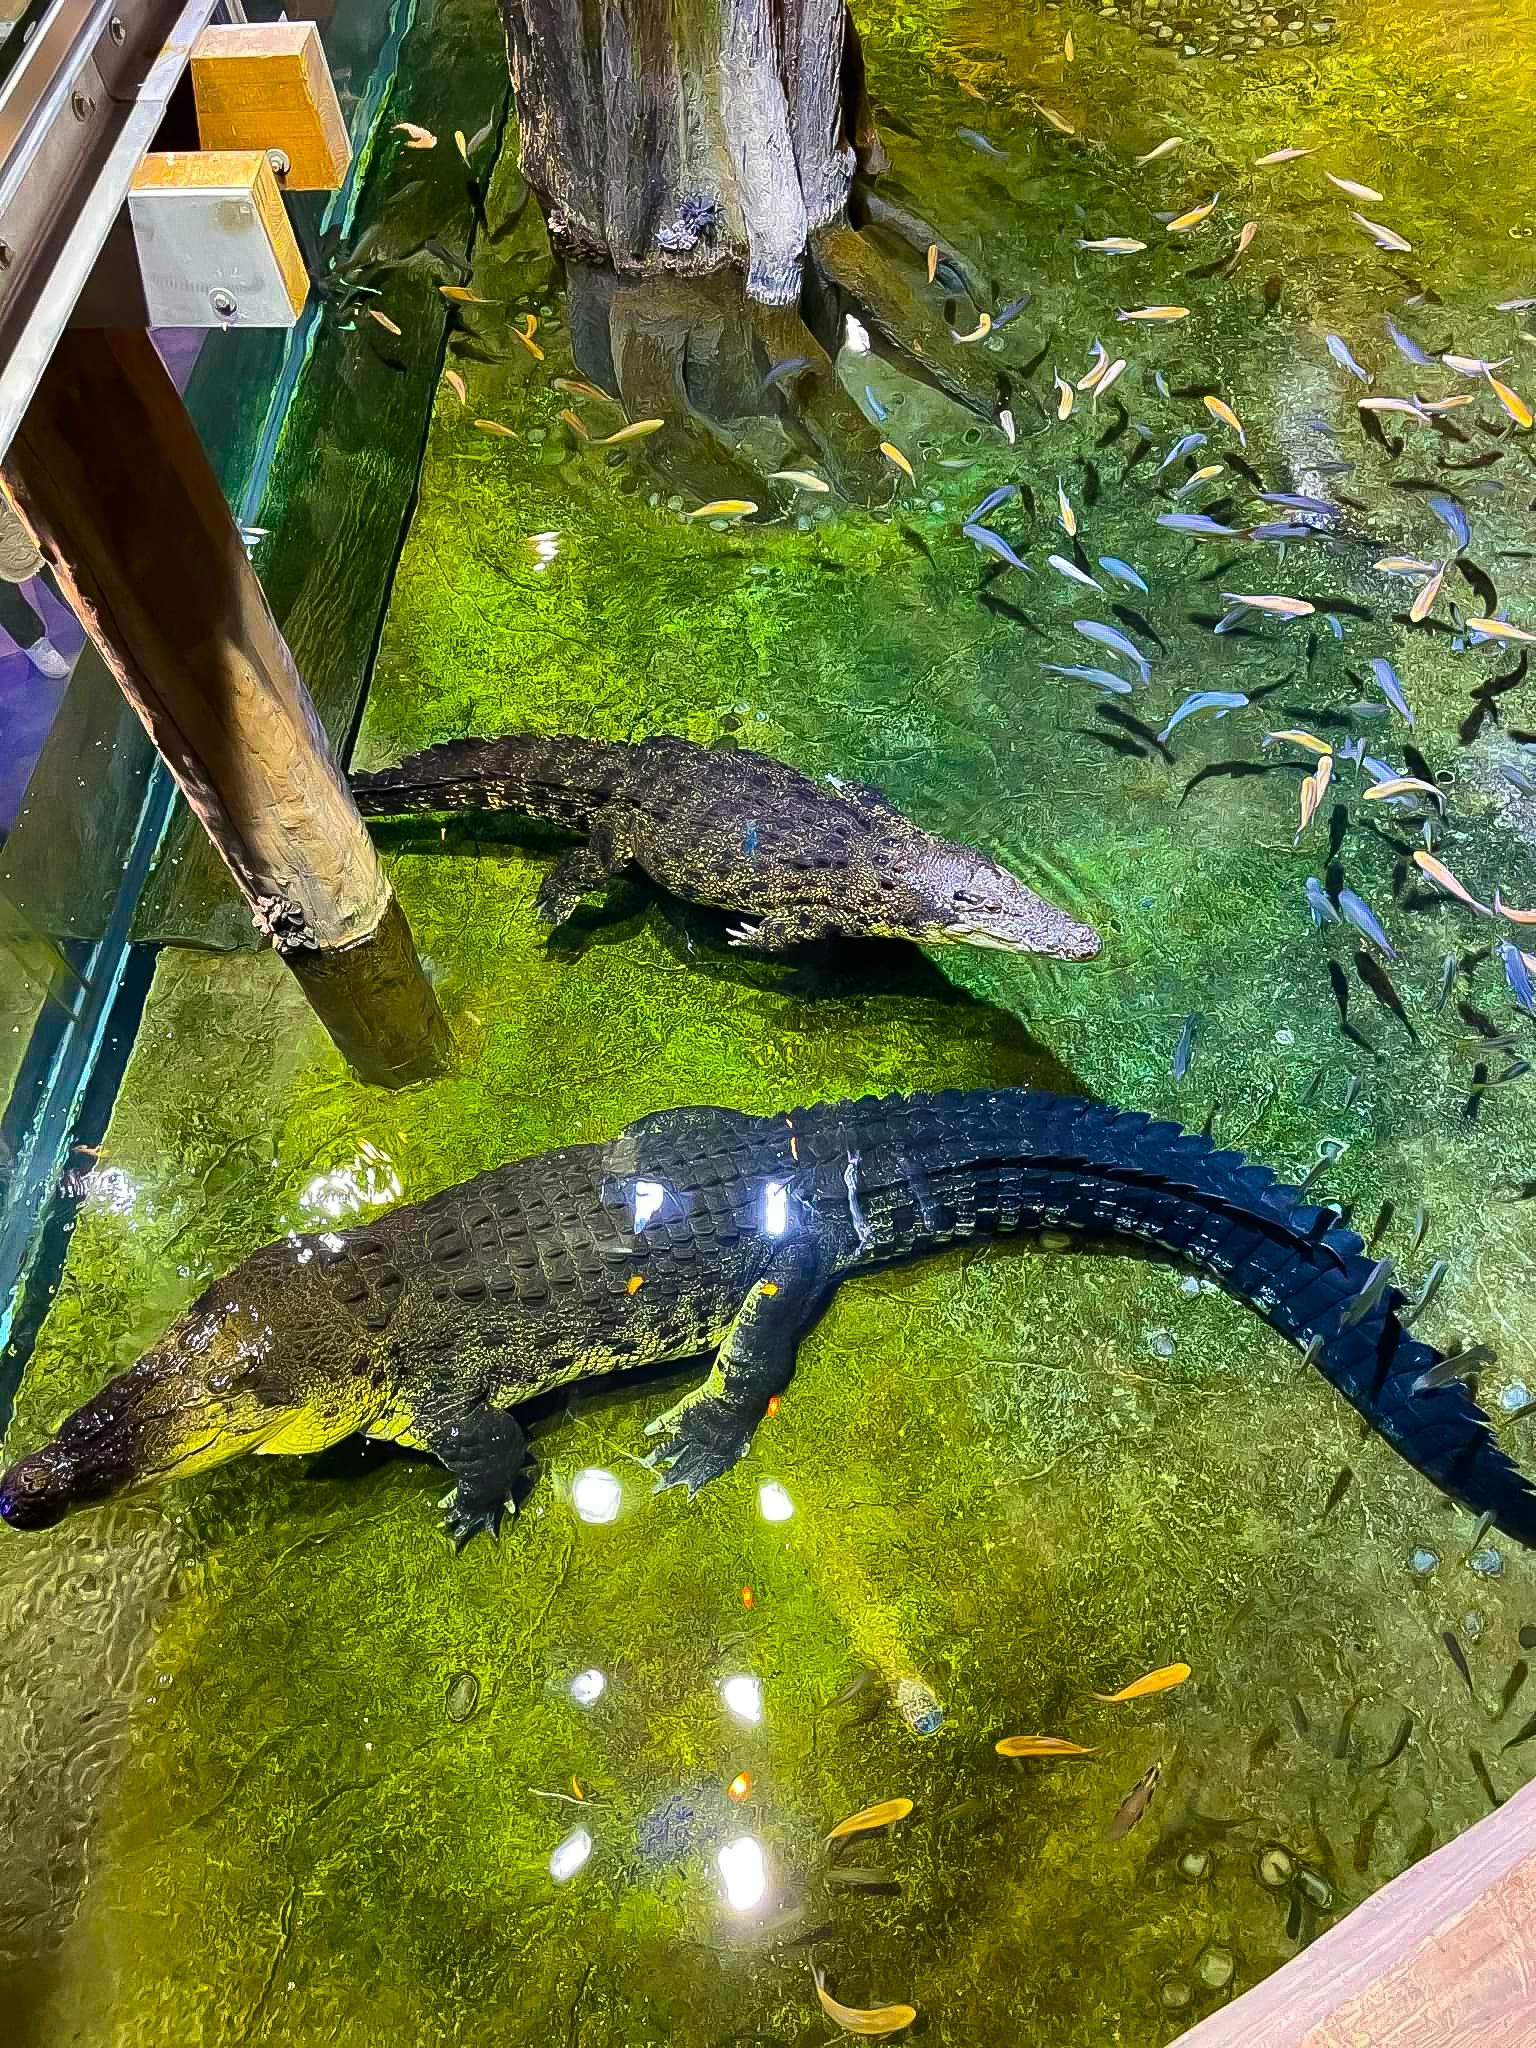 King Croc at Dubai Aquarium & Underwater Zoo<